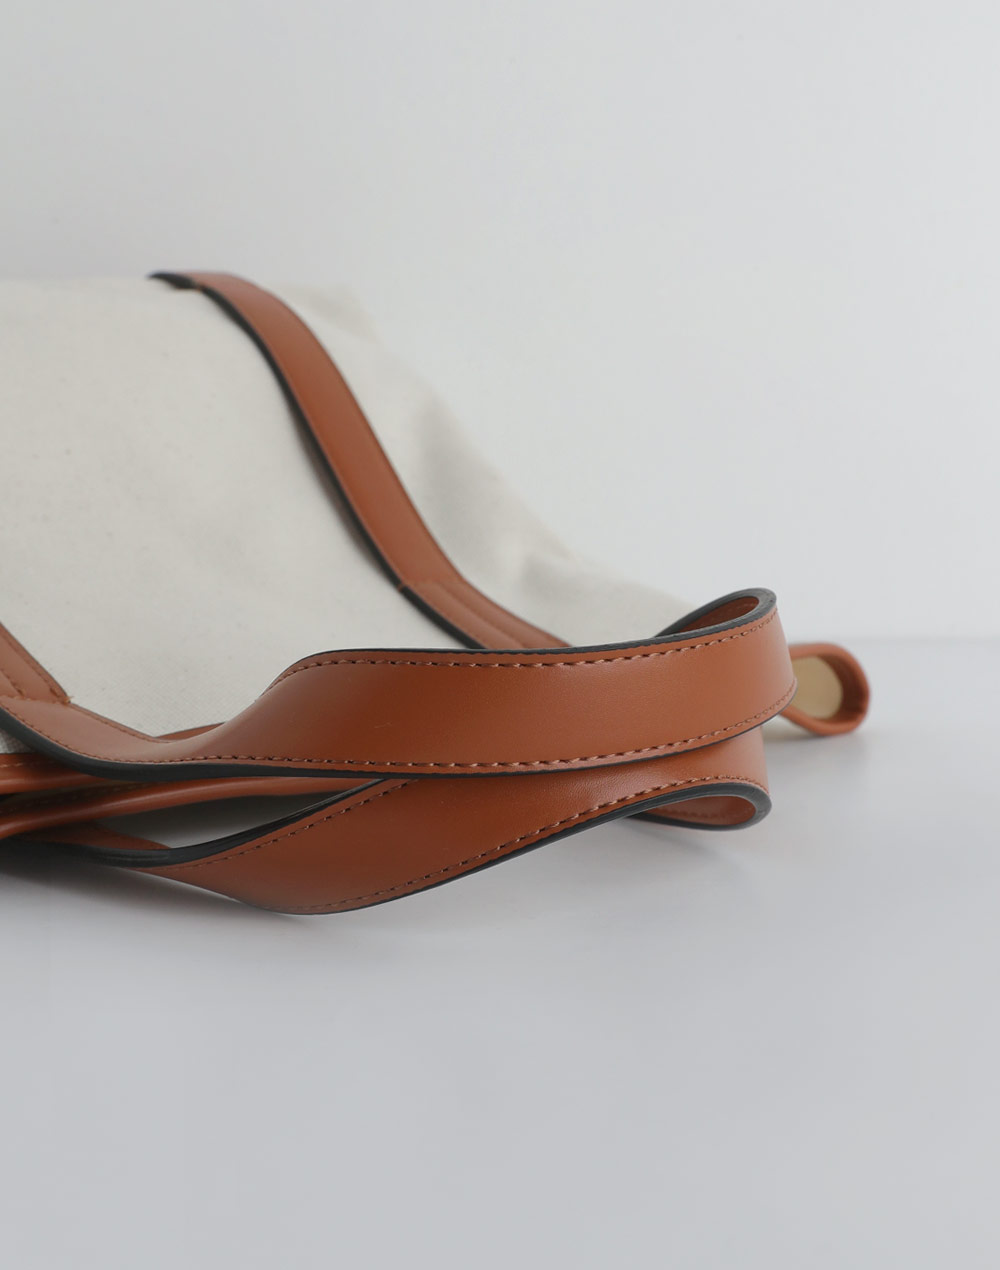 Campus leather bag・d276172（バッグ/バッグ）| 1016_kanako | 東京ガールズマーケット